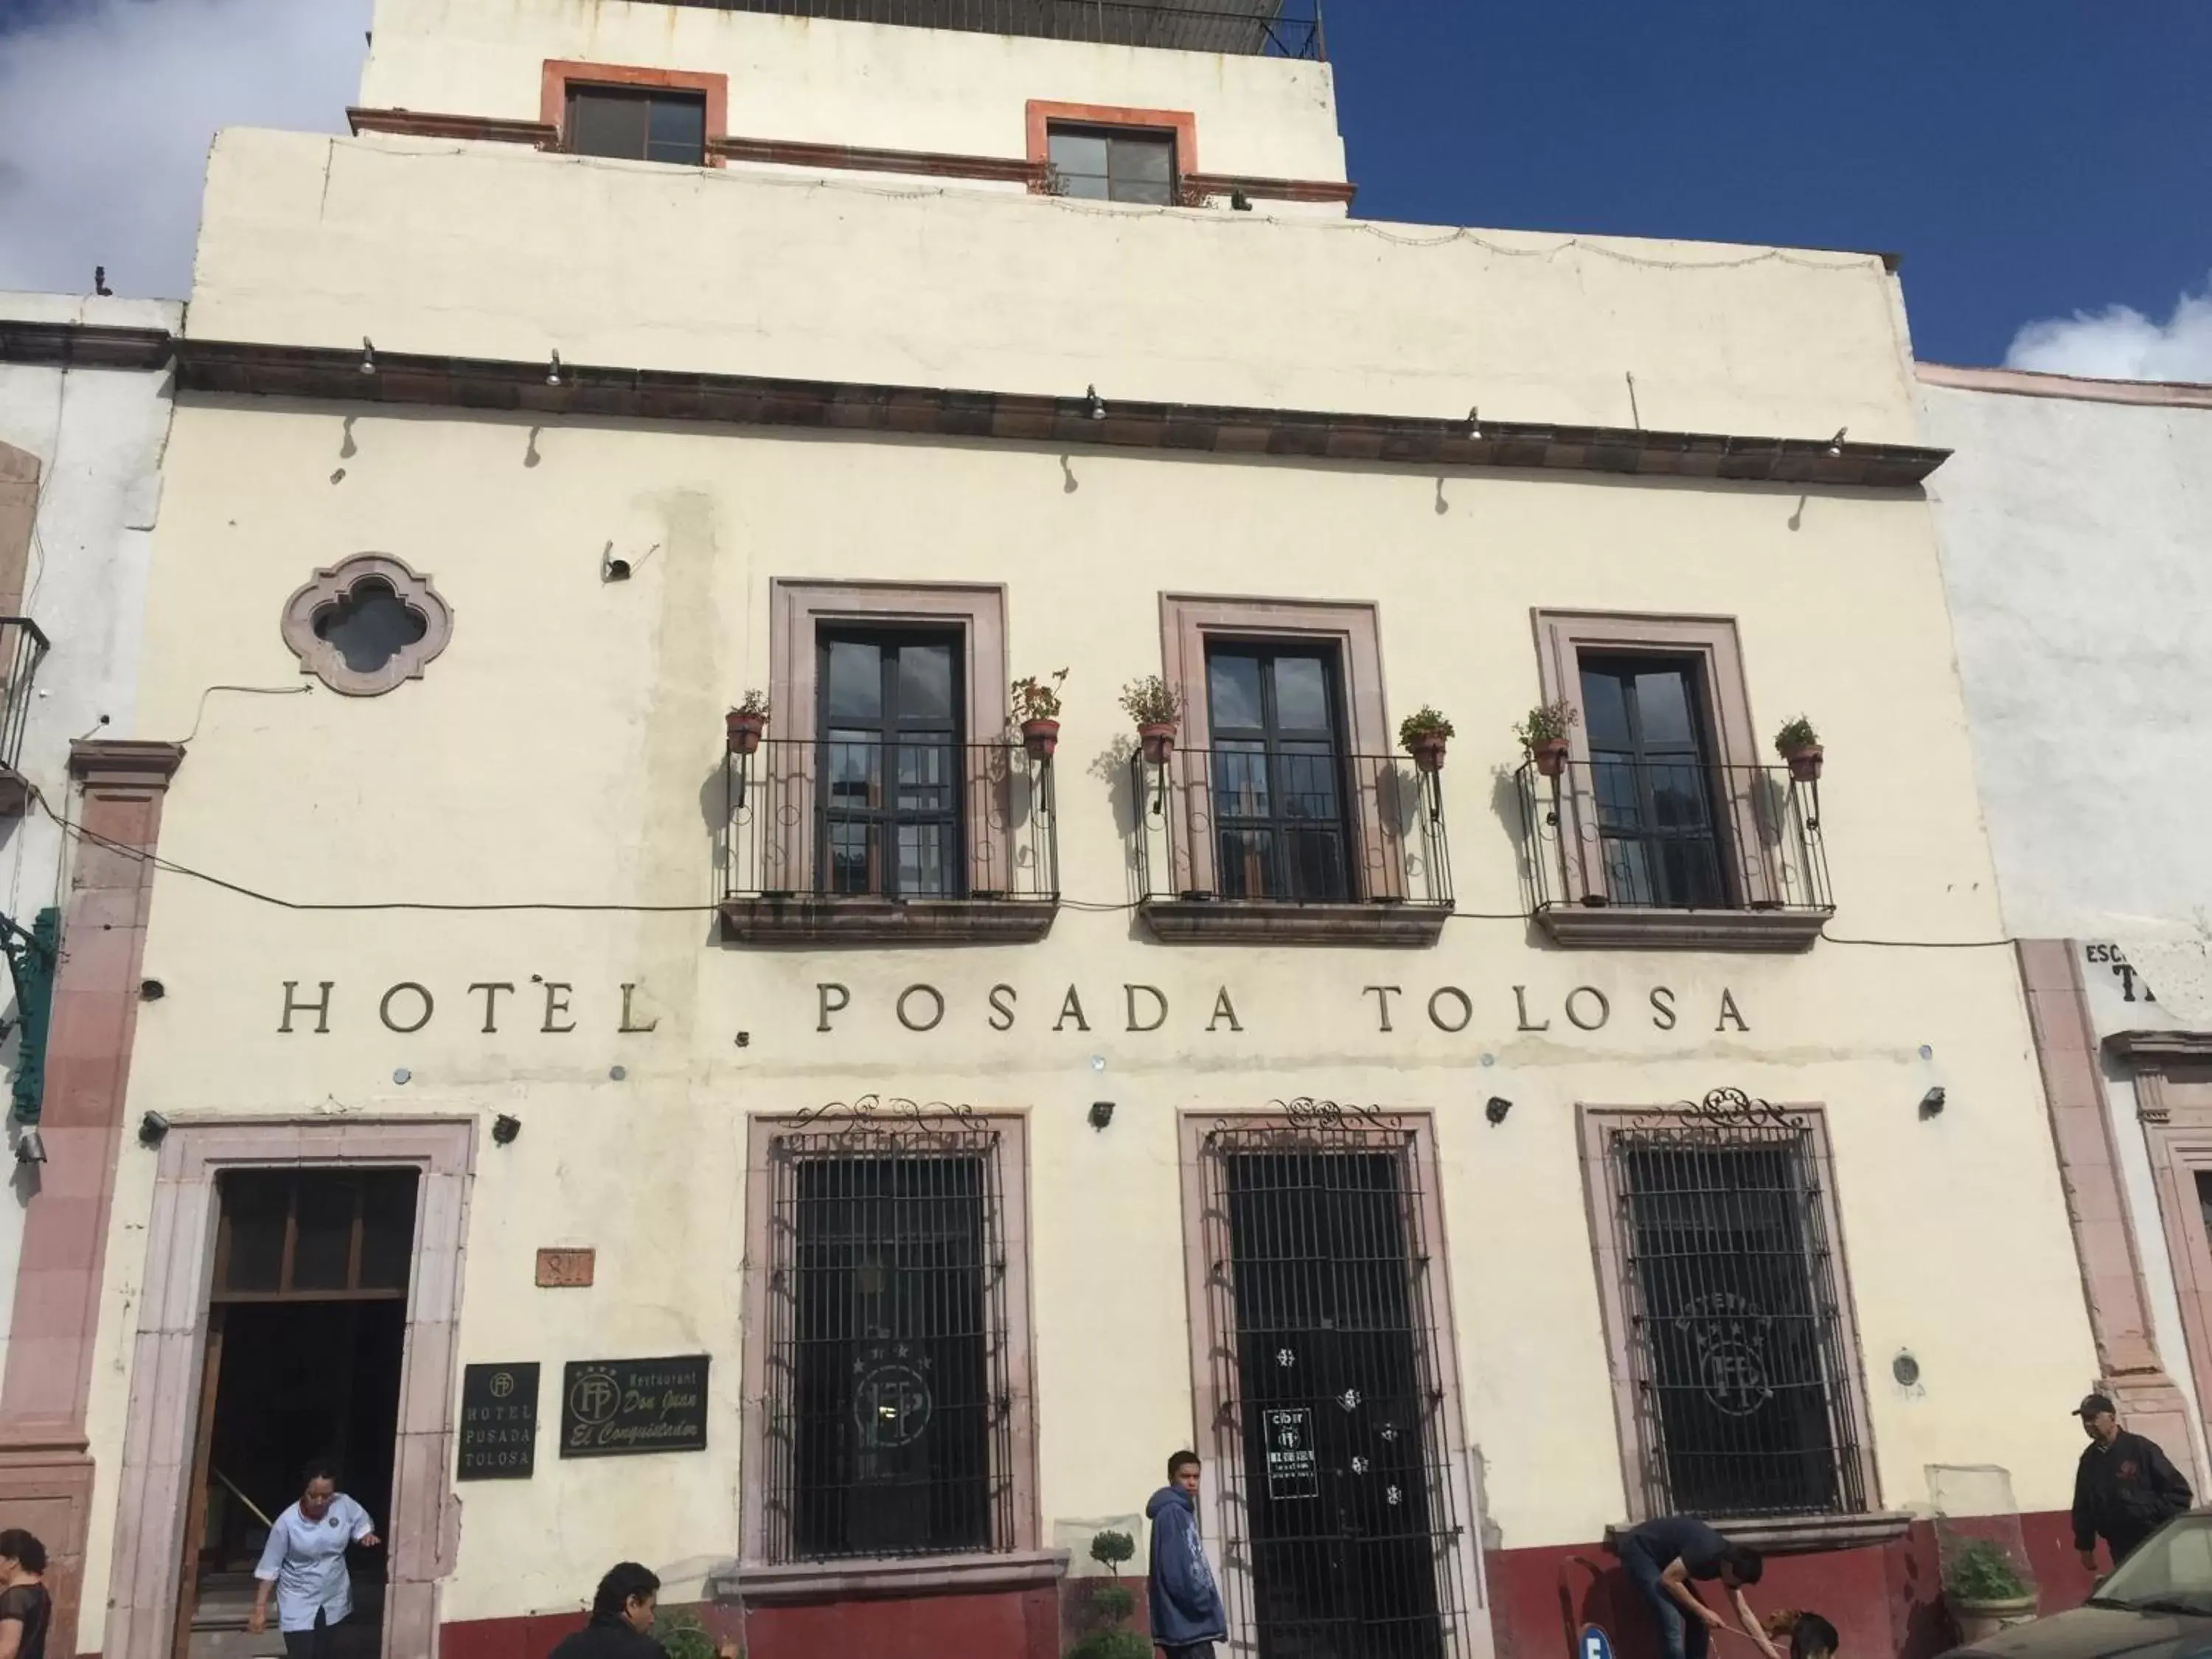 Facade/entrance, Property Building in Posada Tolosa